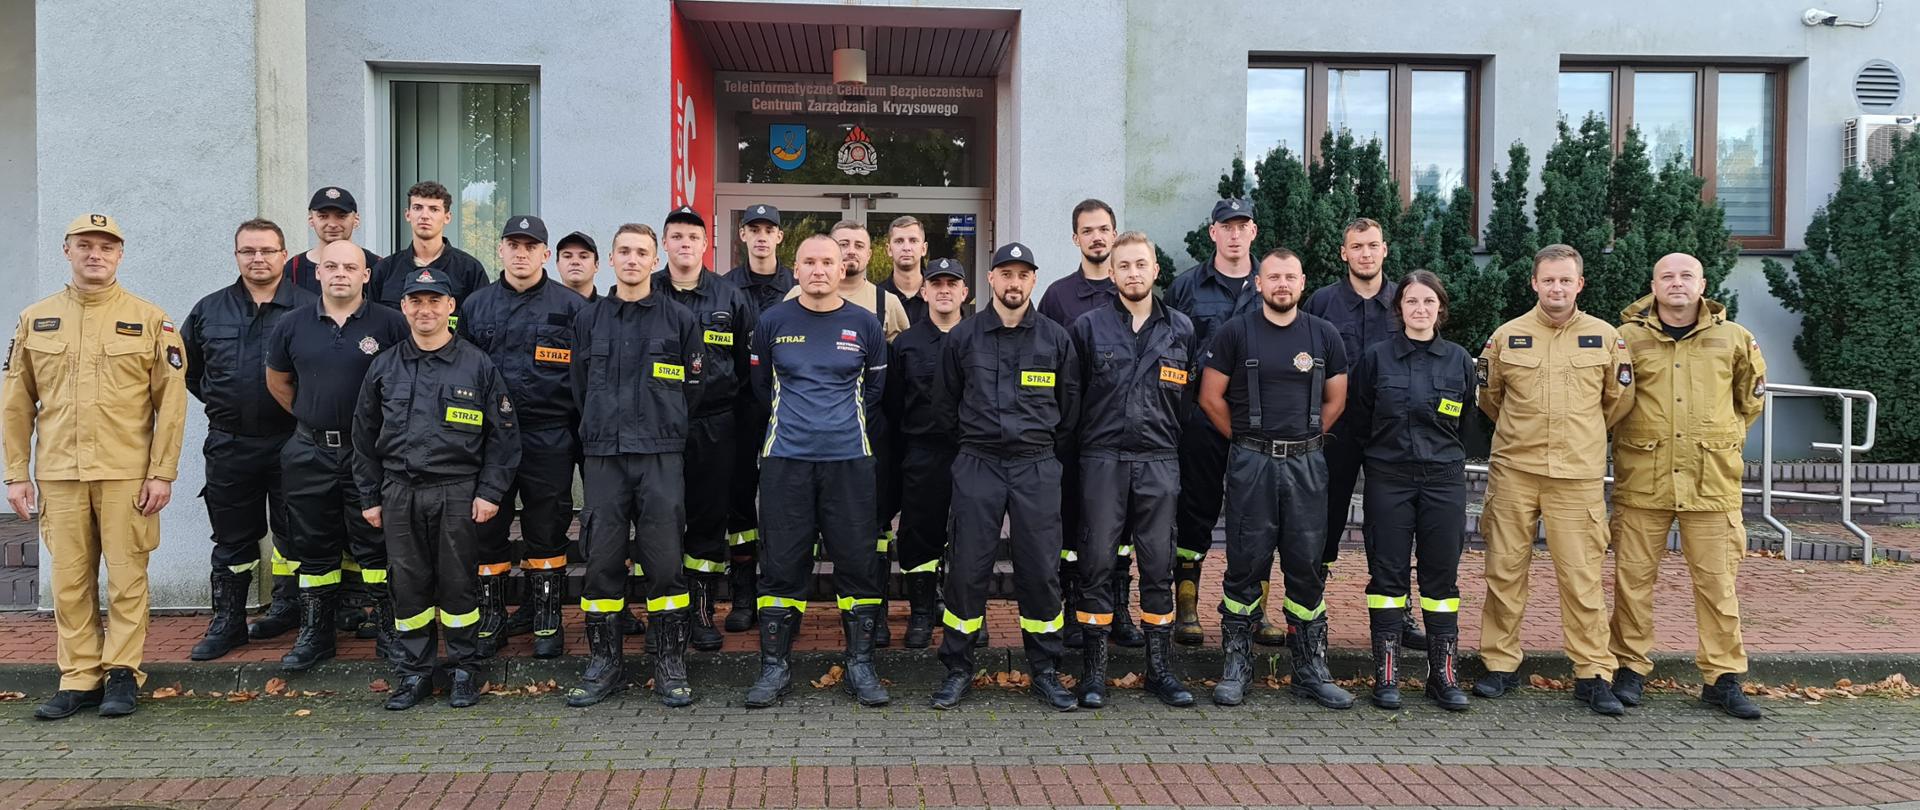 uczestnicy szkolenia kierowców-konserwatorów sprzętu ratowniczego OSP wraz z zastępcą komendanta miejskiego państwowej straży pożarnej w tychach